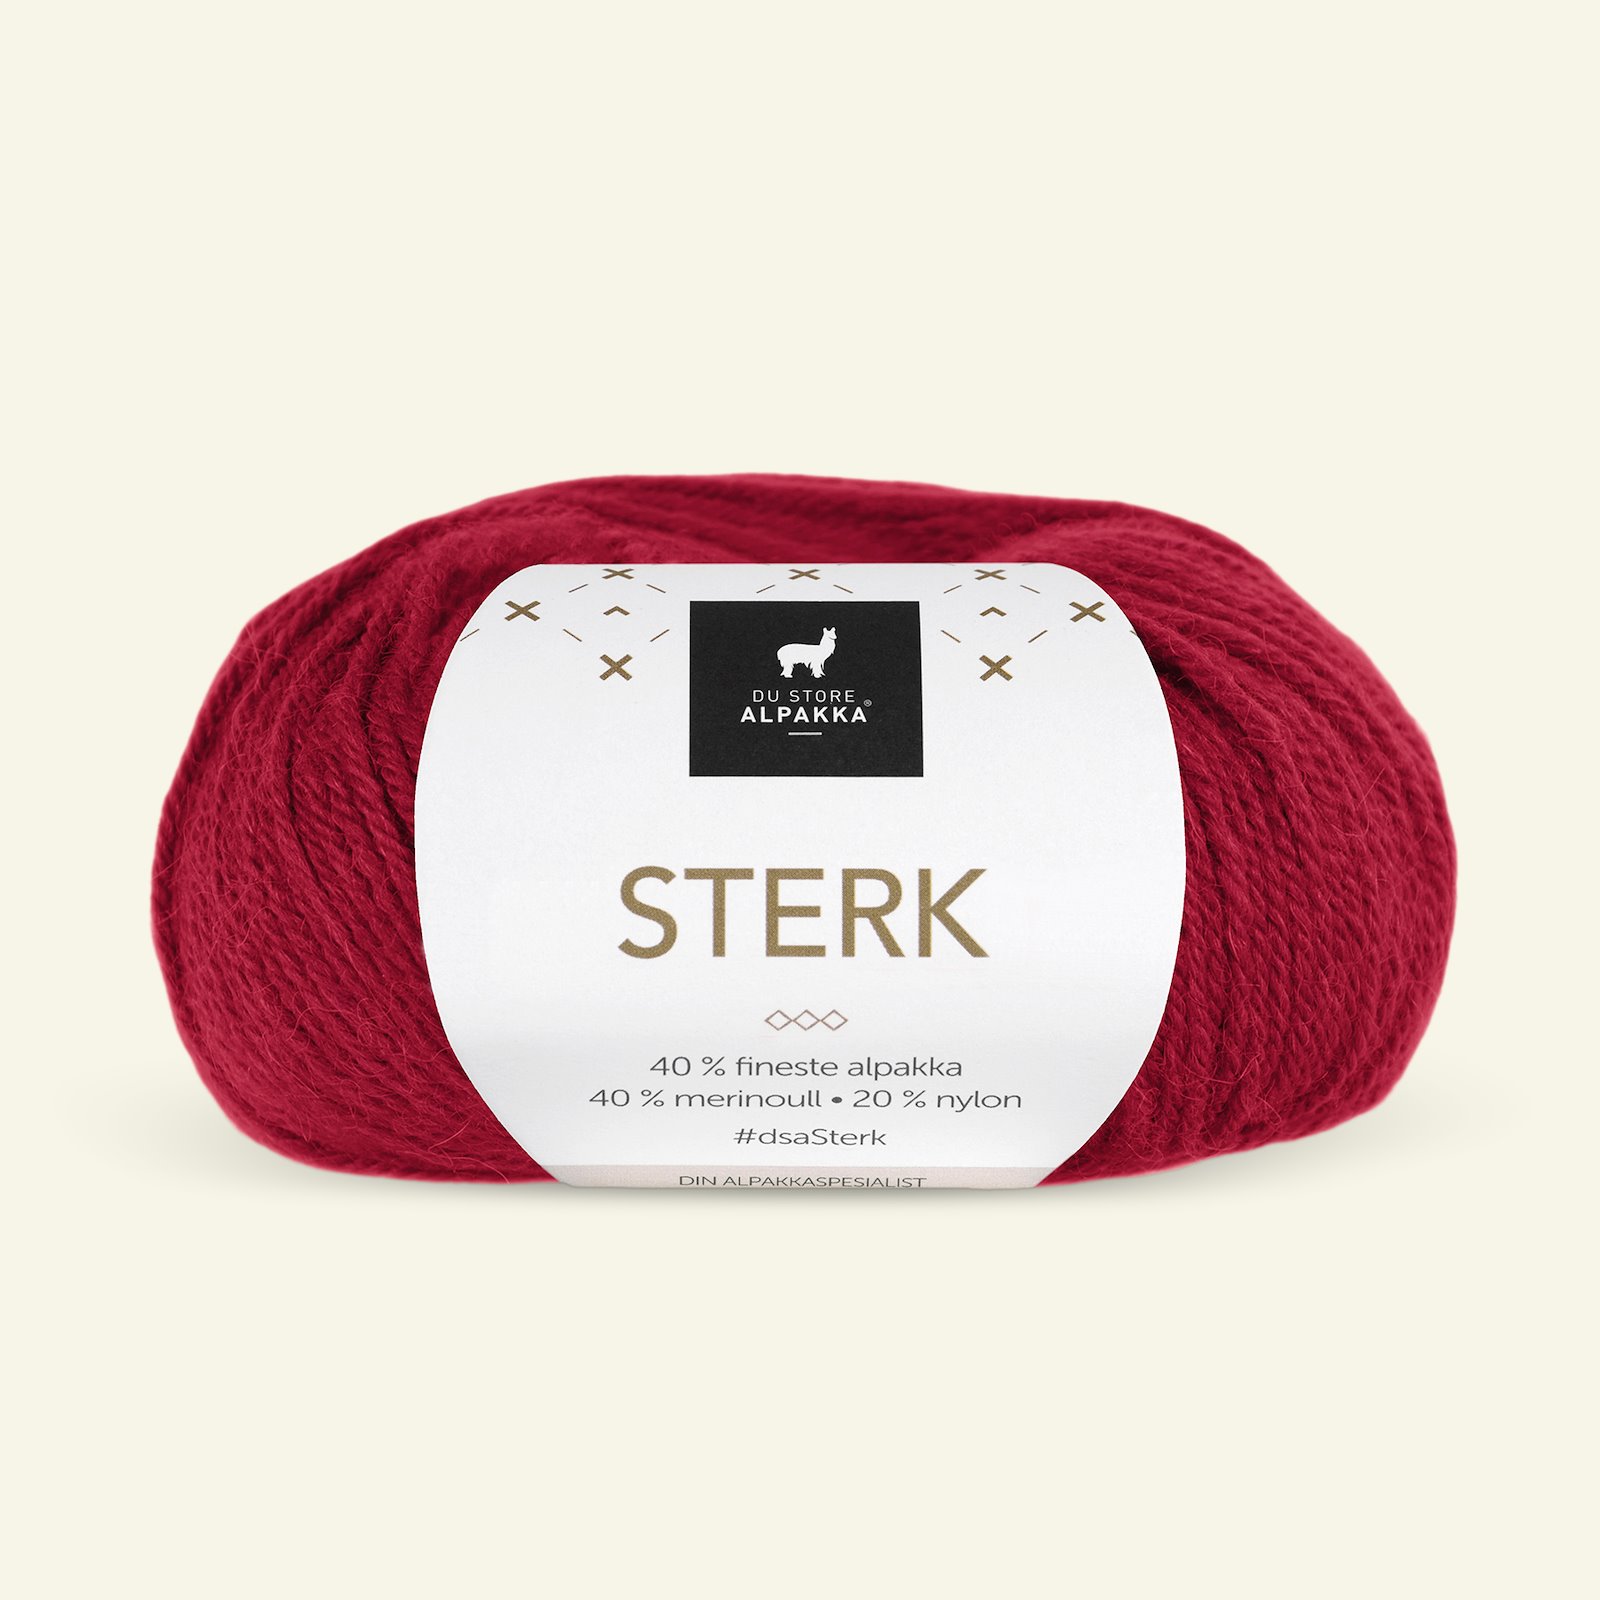 Du Store Alpakka, alpaca merino mixed yarn "Sterk", dark red (819) 90000662_pack